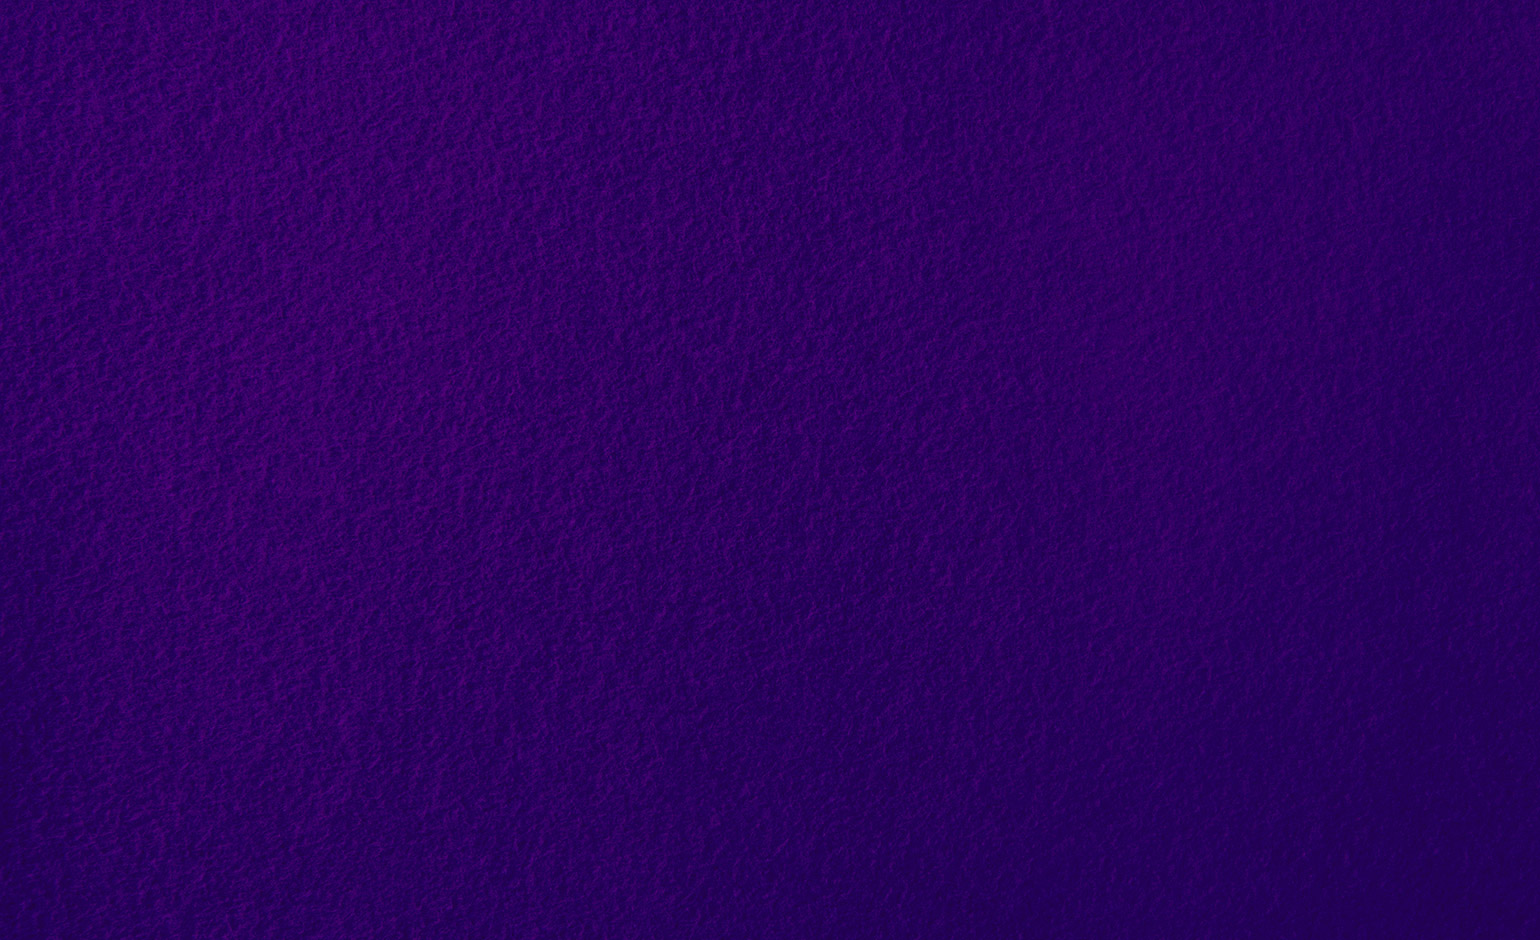 Moquette aiguilletée PODIUM P 3, col violet, rouleau 3.00 m